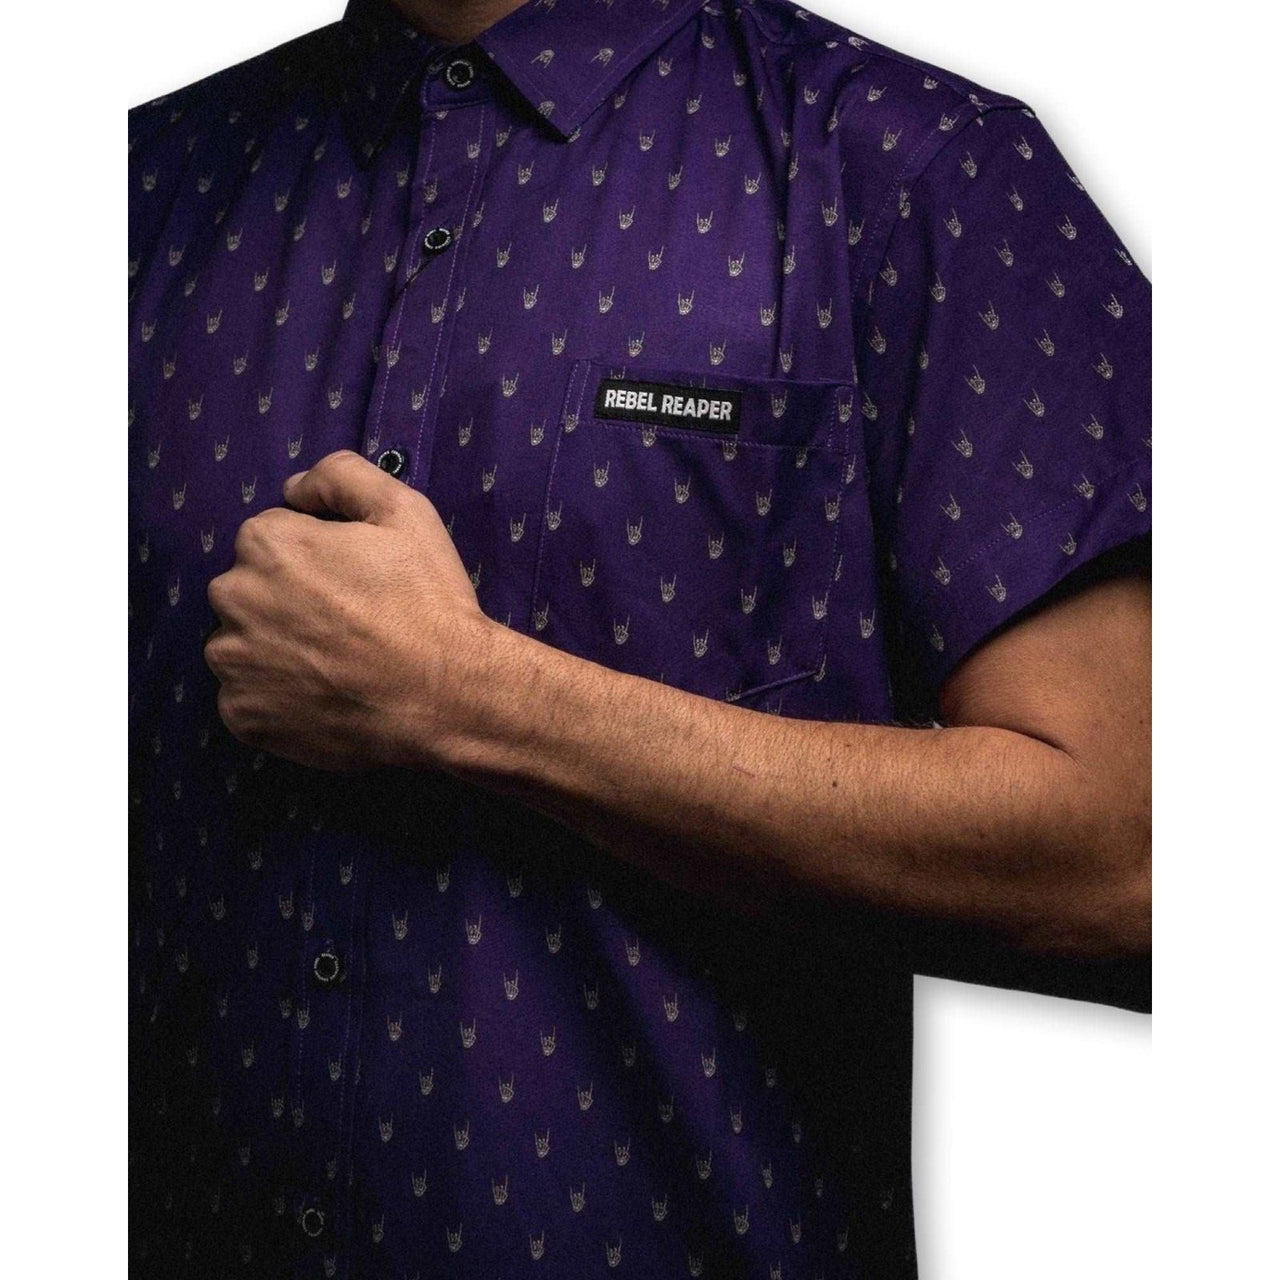 Metal Hands | Button Up Shirt | Purple